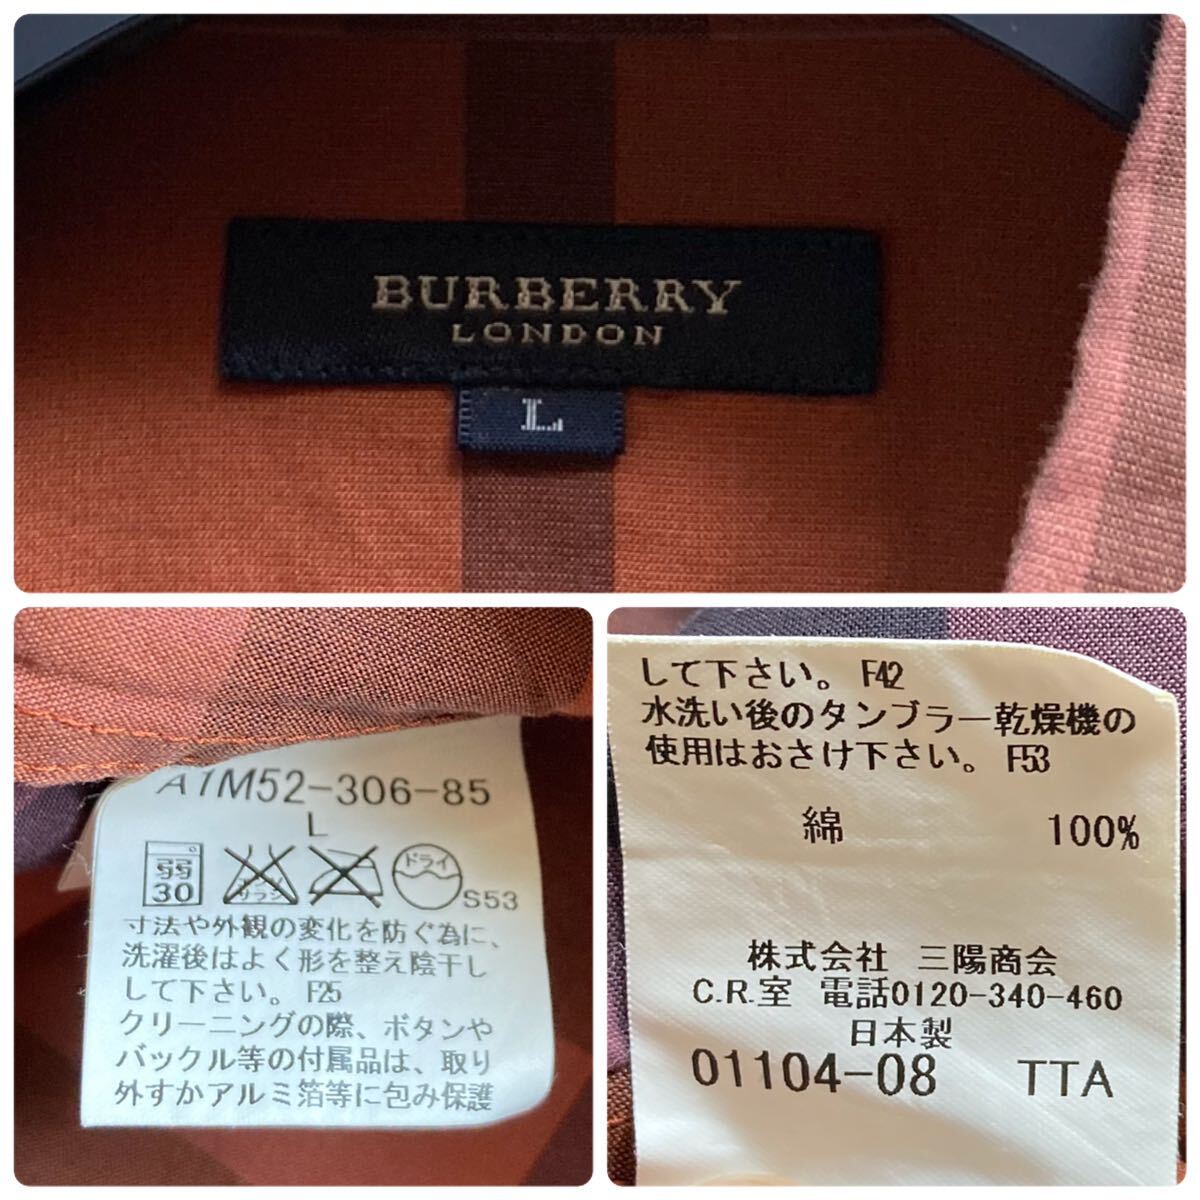 【美品】BURBERRY LONDON バーバリー ロンドン 長袖 シャツ ノバチェック コットン 綿100% L 大きいサイズ メンズの画像9